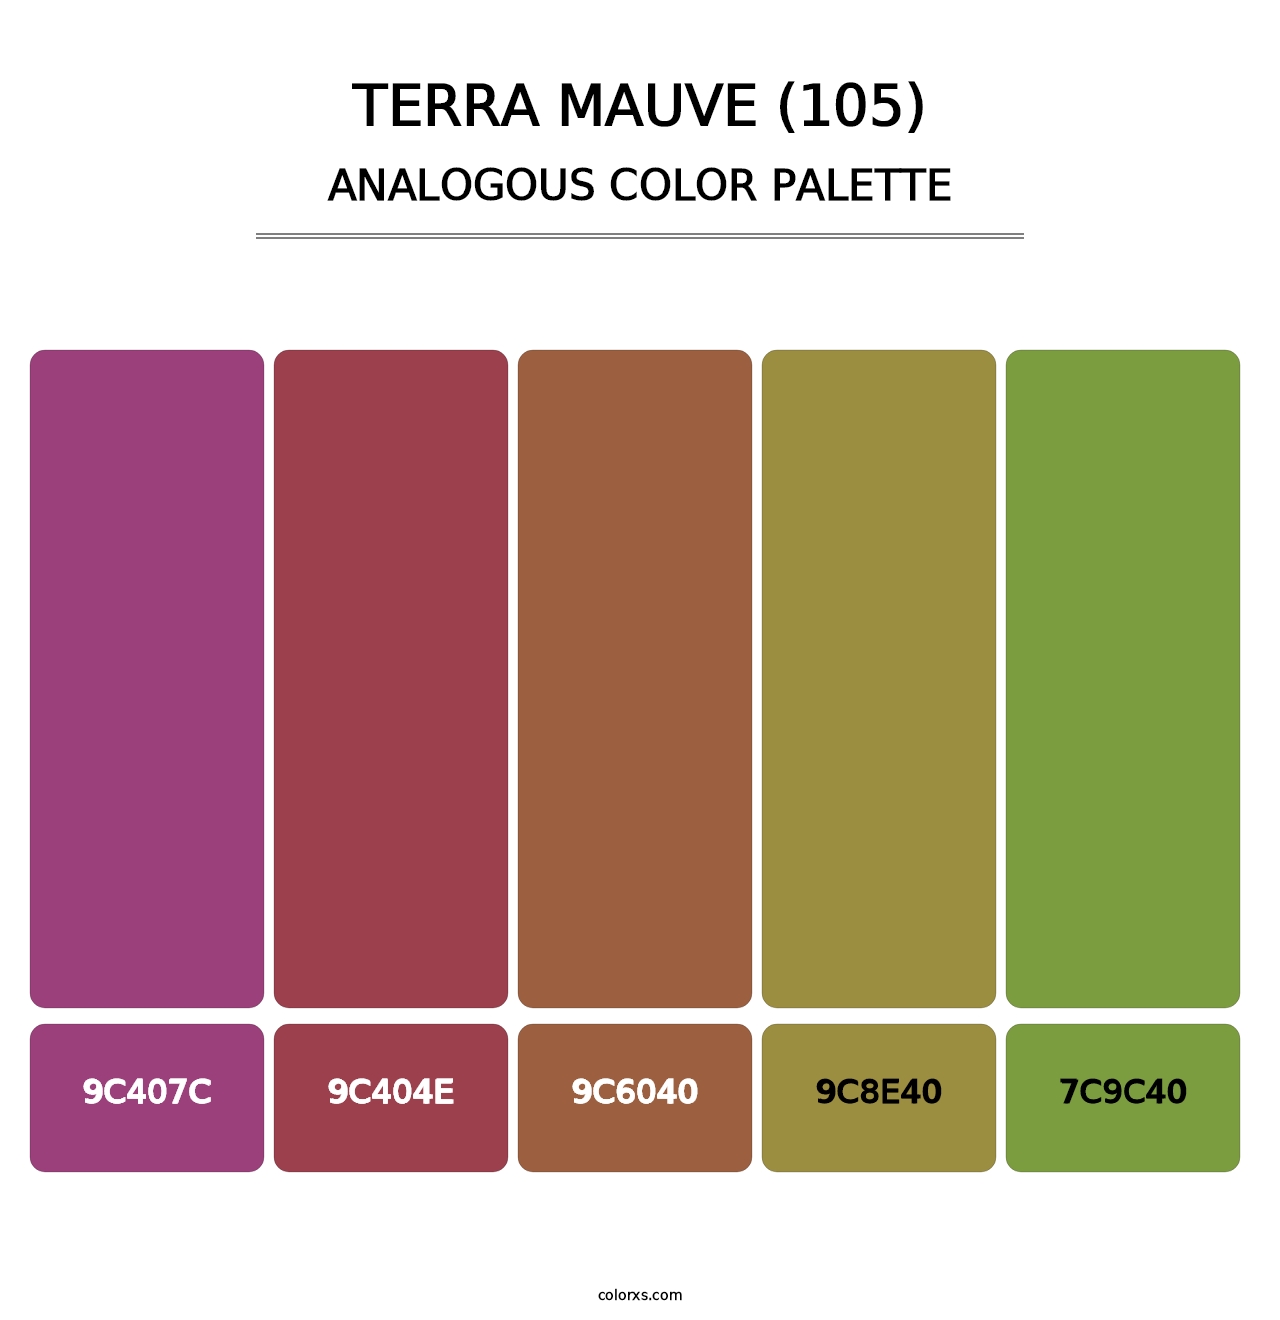 Terra Mauve (105) - Analogous Color Palette